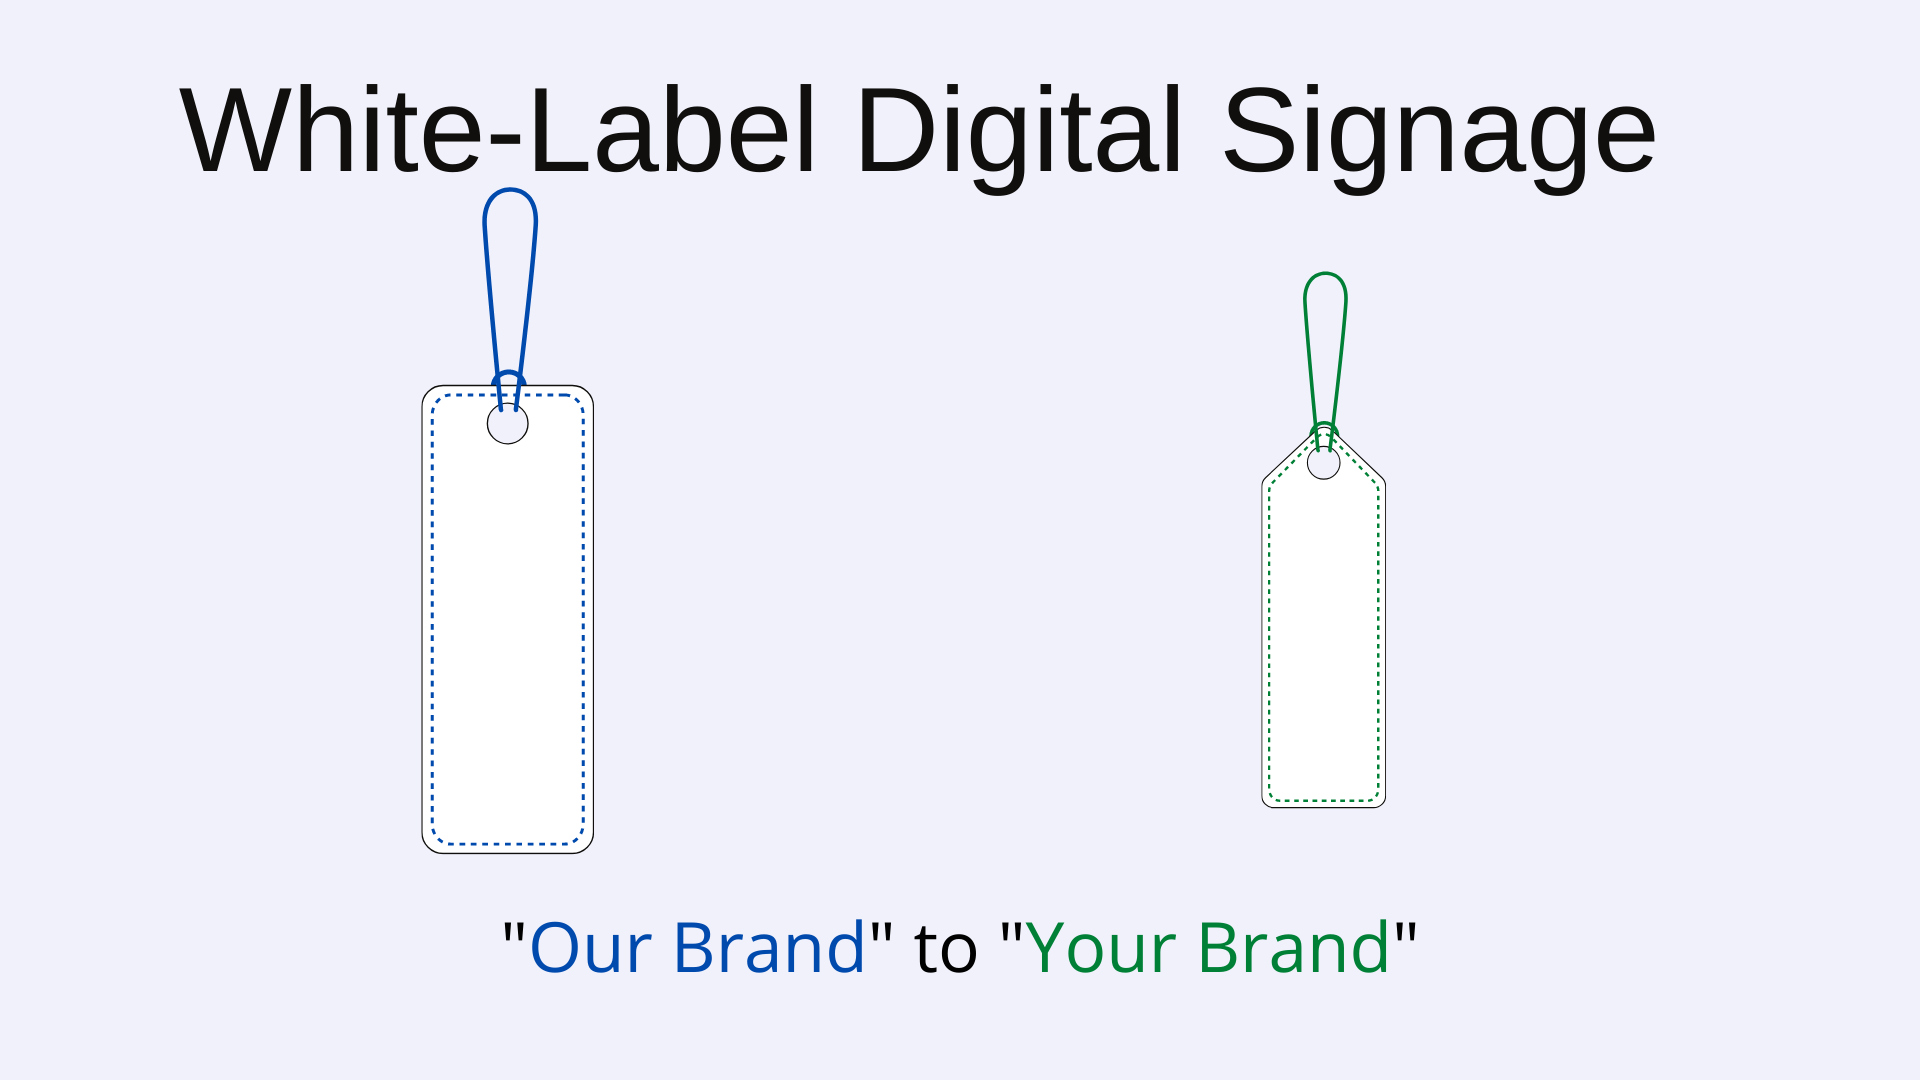 Whitelabel Digital Signage Software